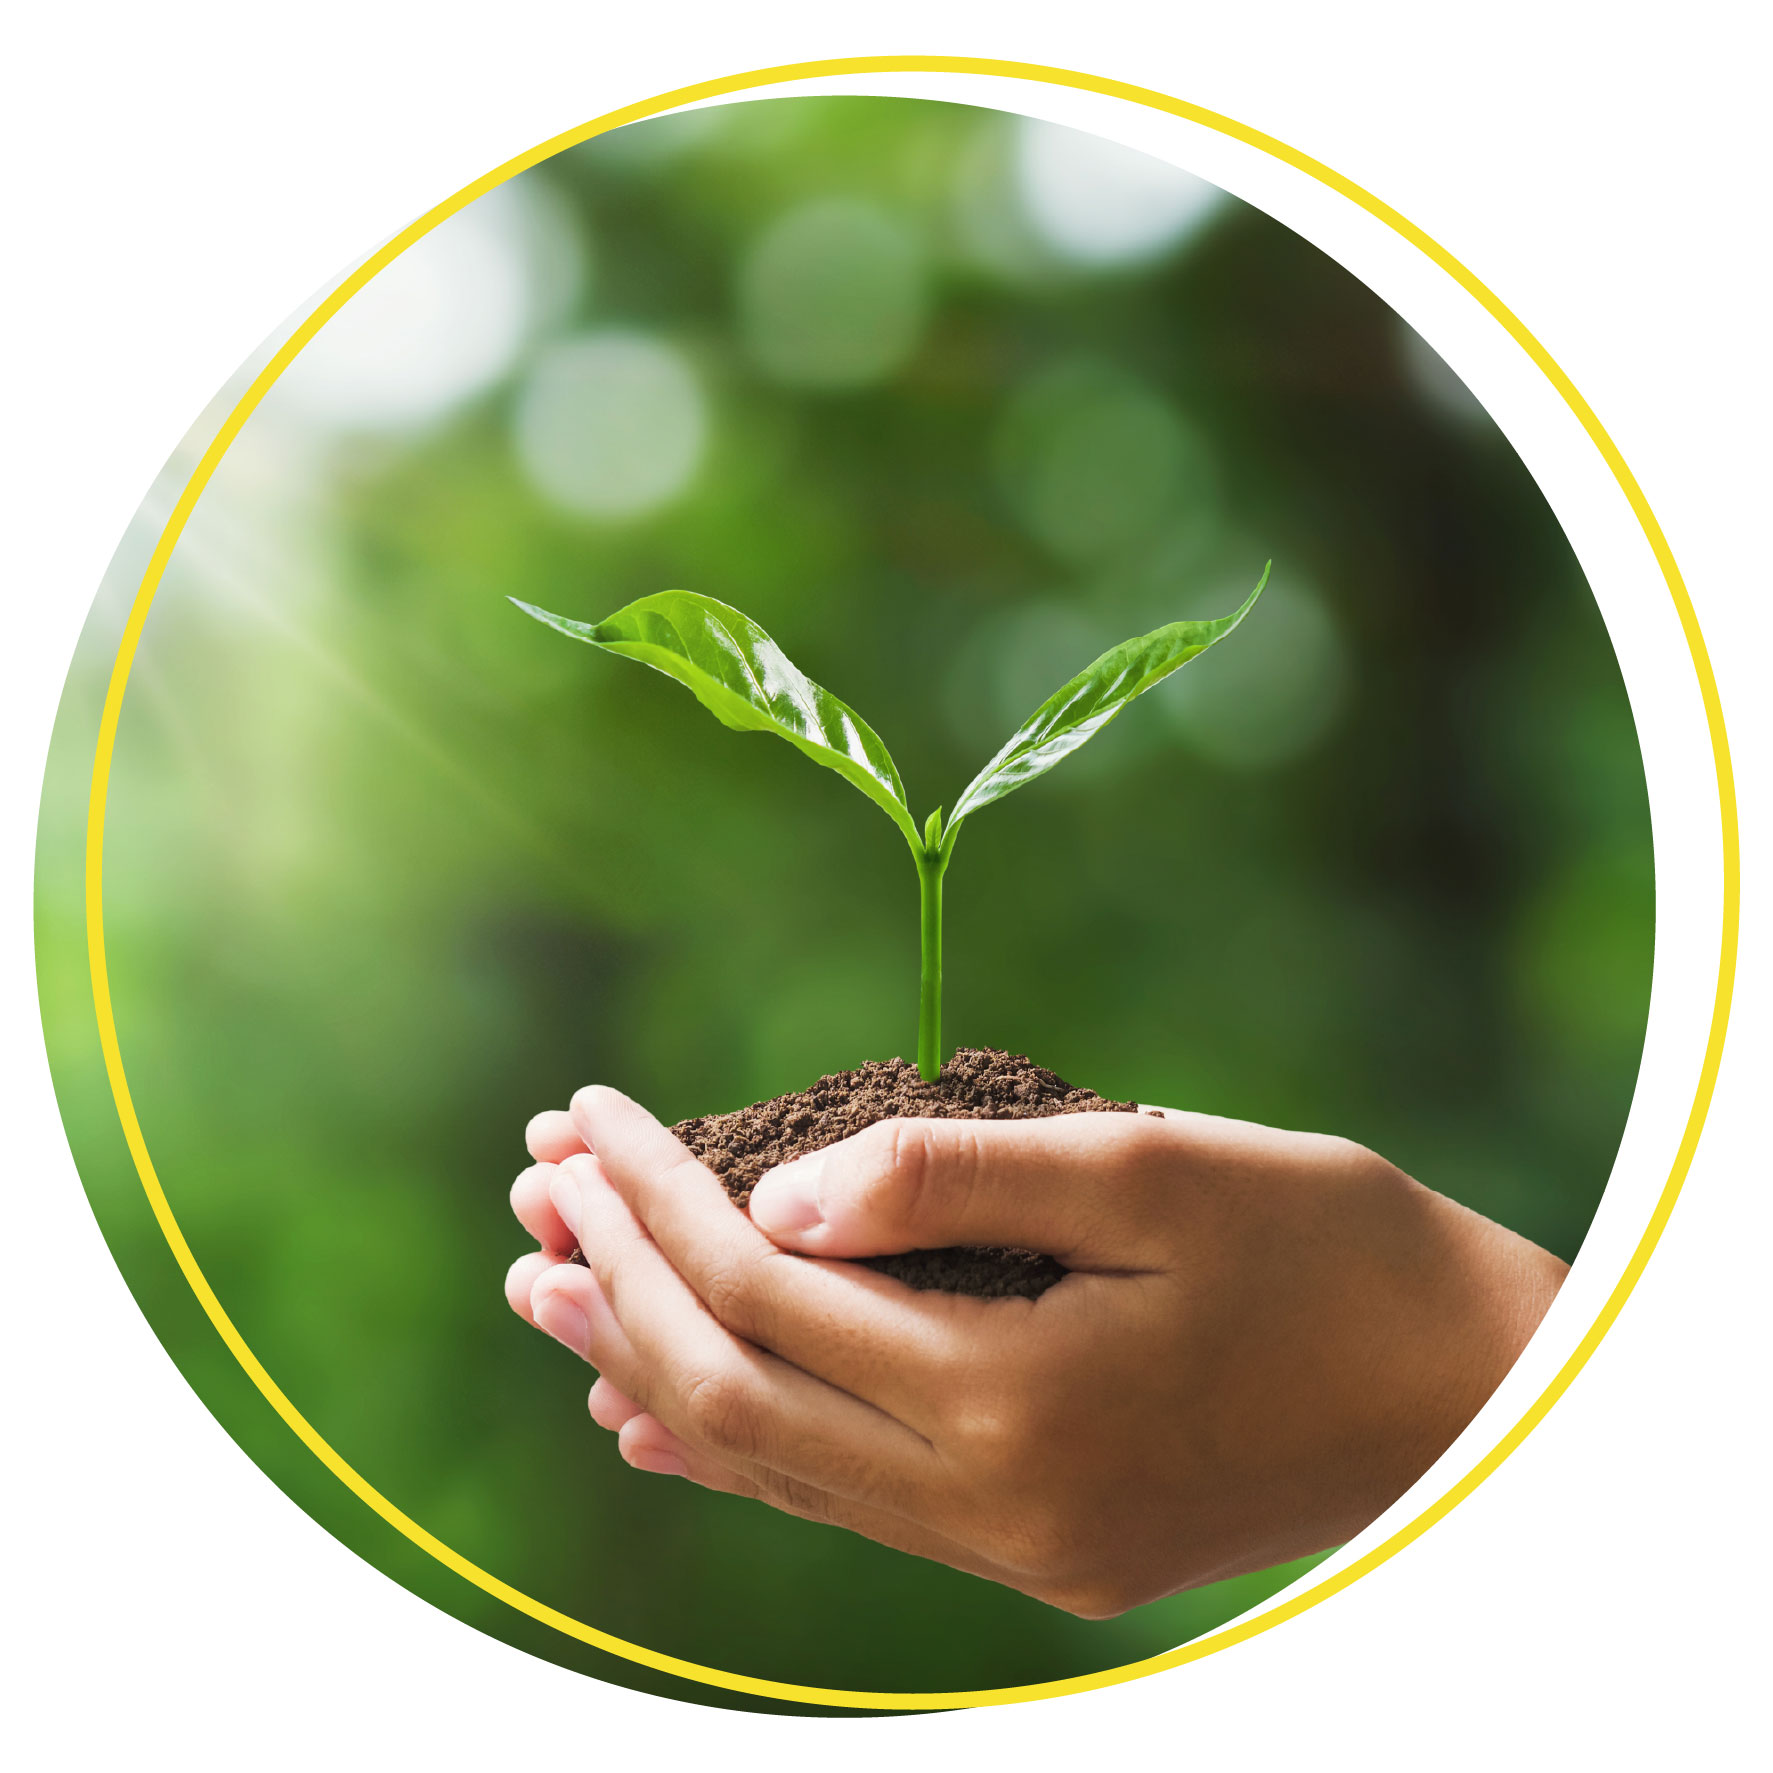 Χέρια που κρατούν ένα φυτό συμβολίζοντας την έννοια της εταιρική ευθύνης απέναντι στο περιβάλλον